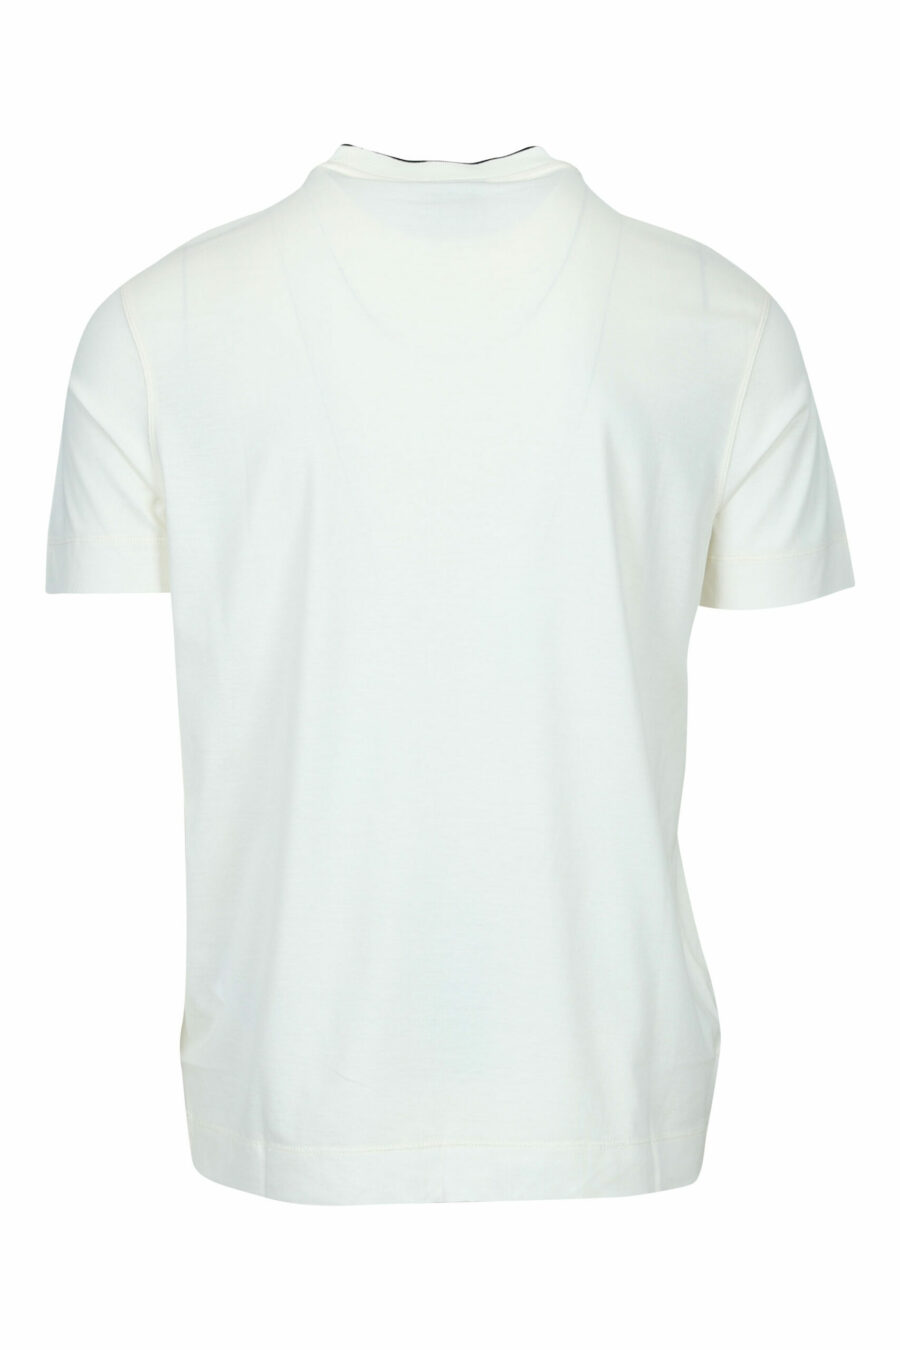 T-shirt crème avec logo de l'aigle centré - 8058947986996 1 scaled